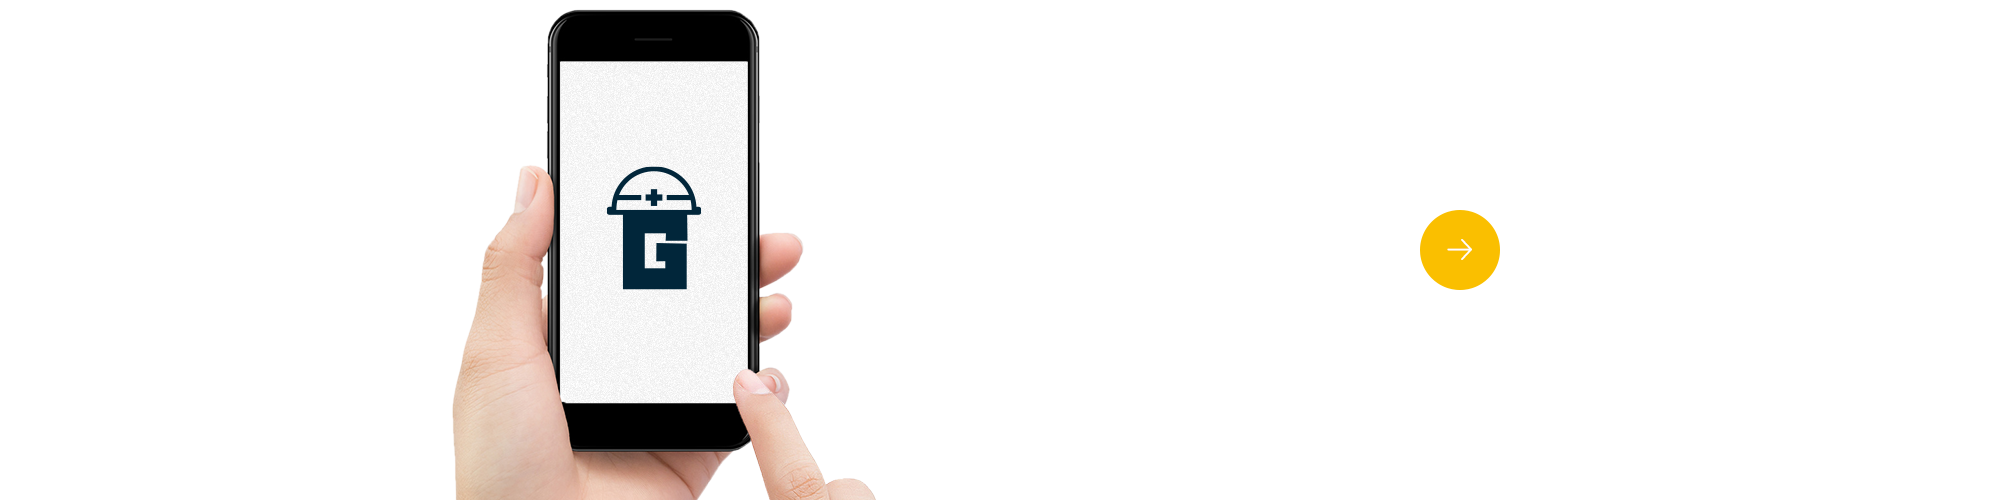 bnr_gaten_off